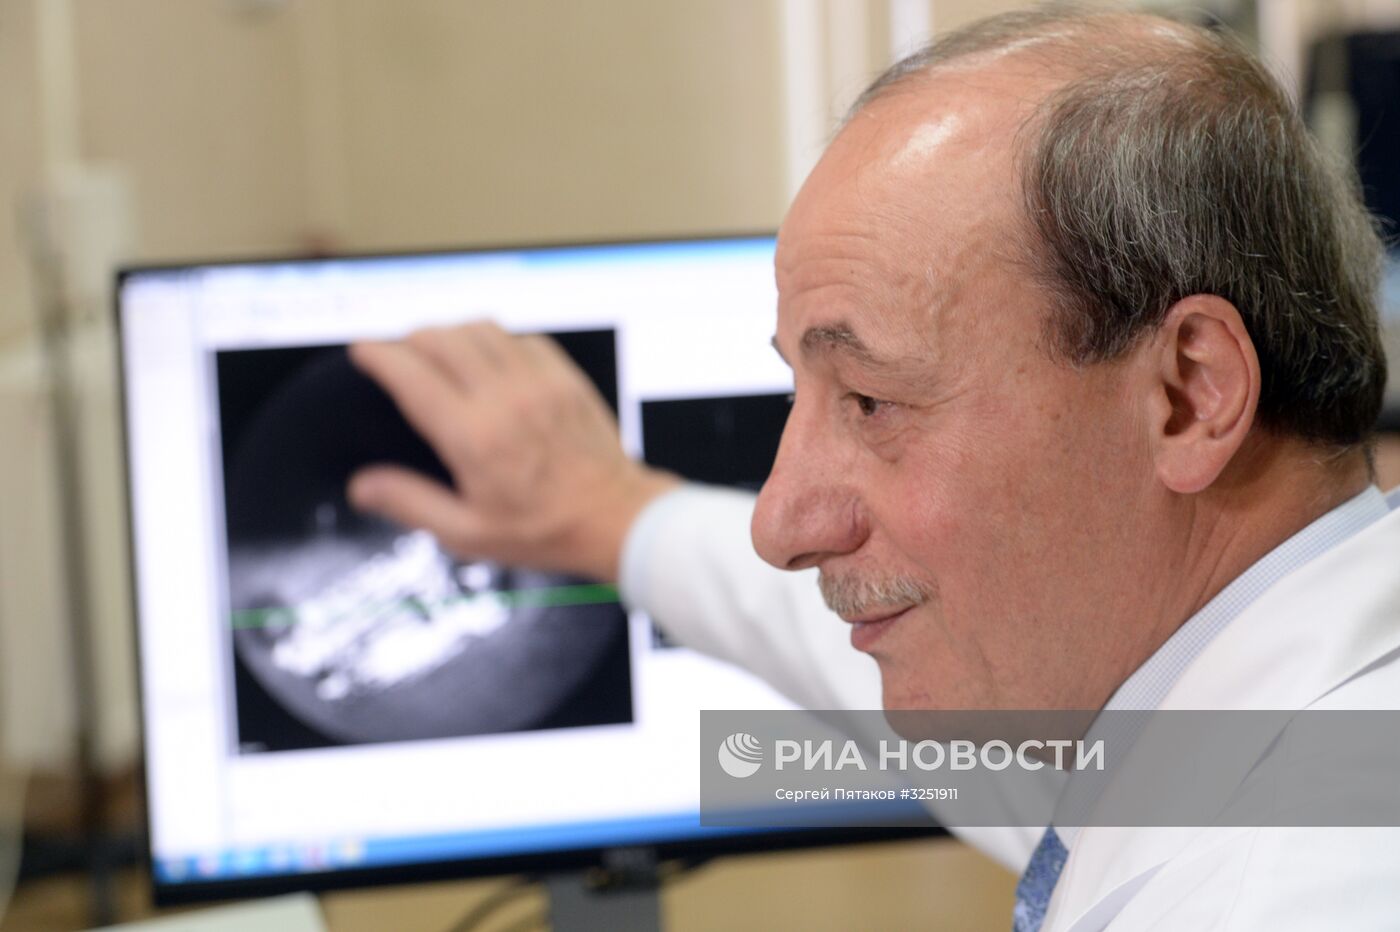 Бионический глаз установили пациентке в научно-клиническом центре отоларингологии РФ